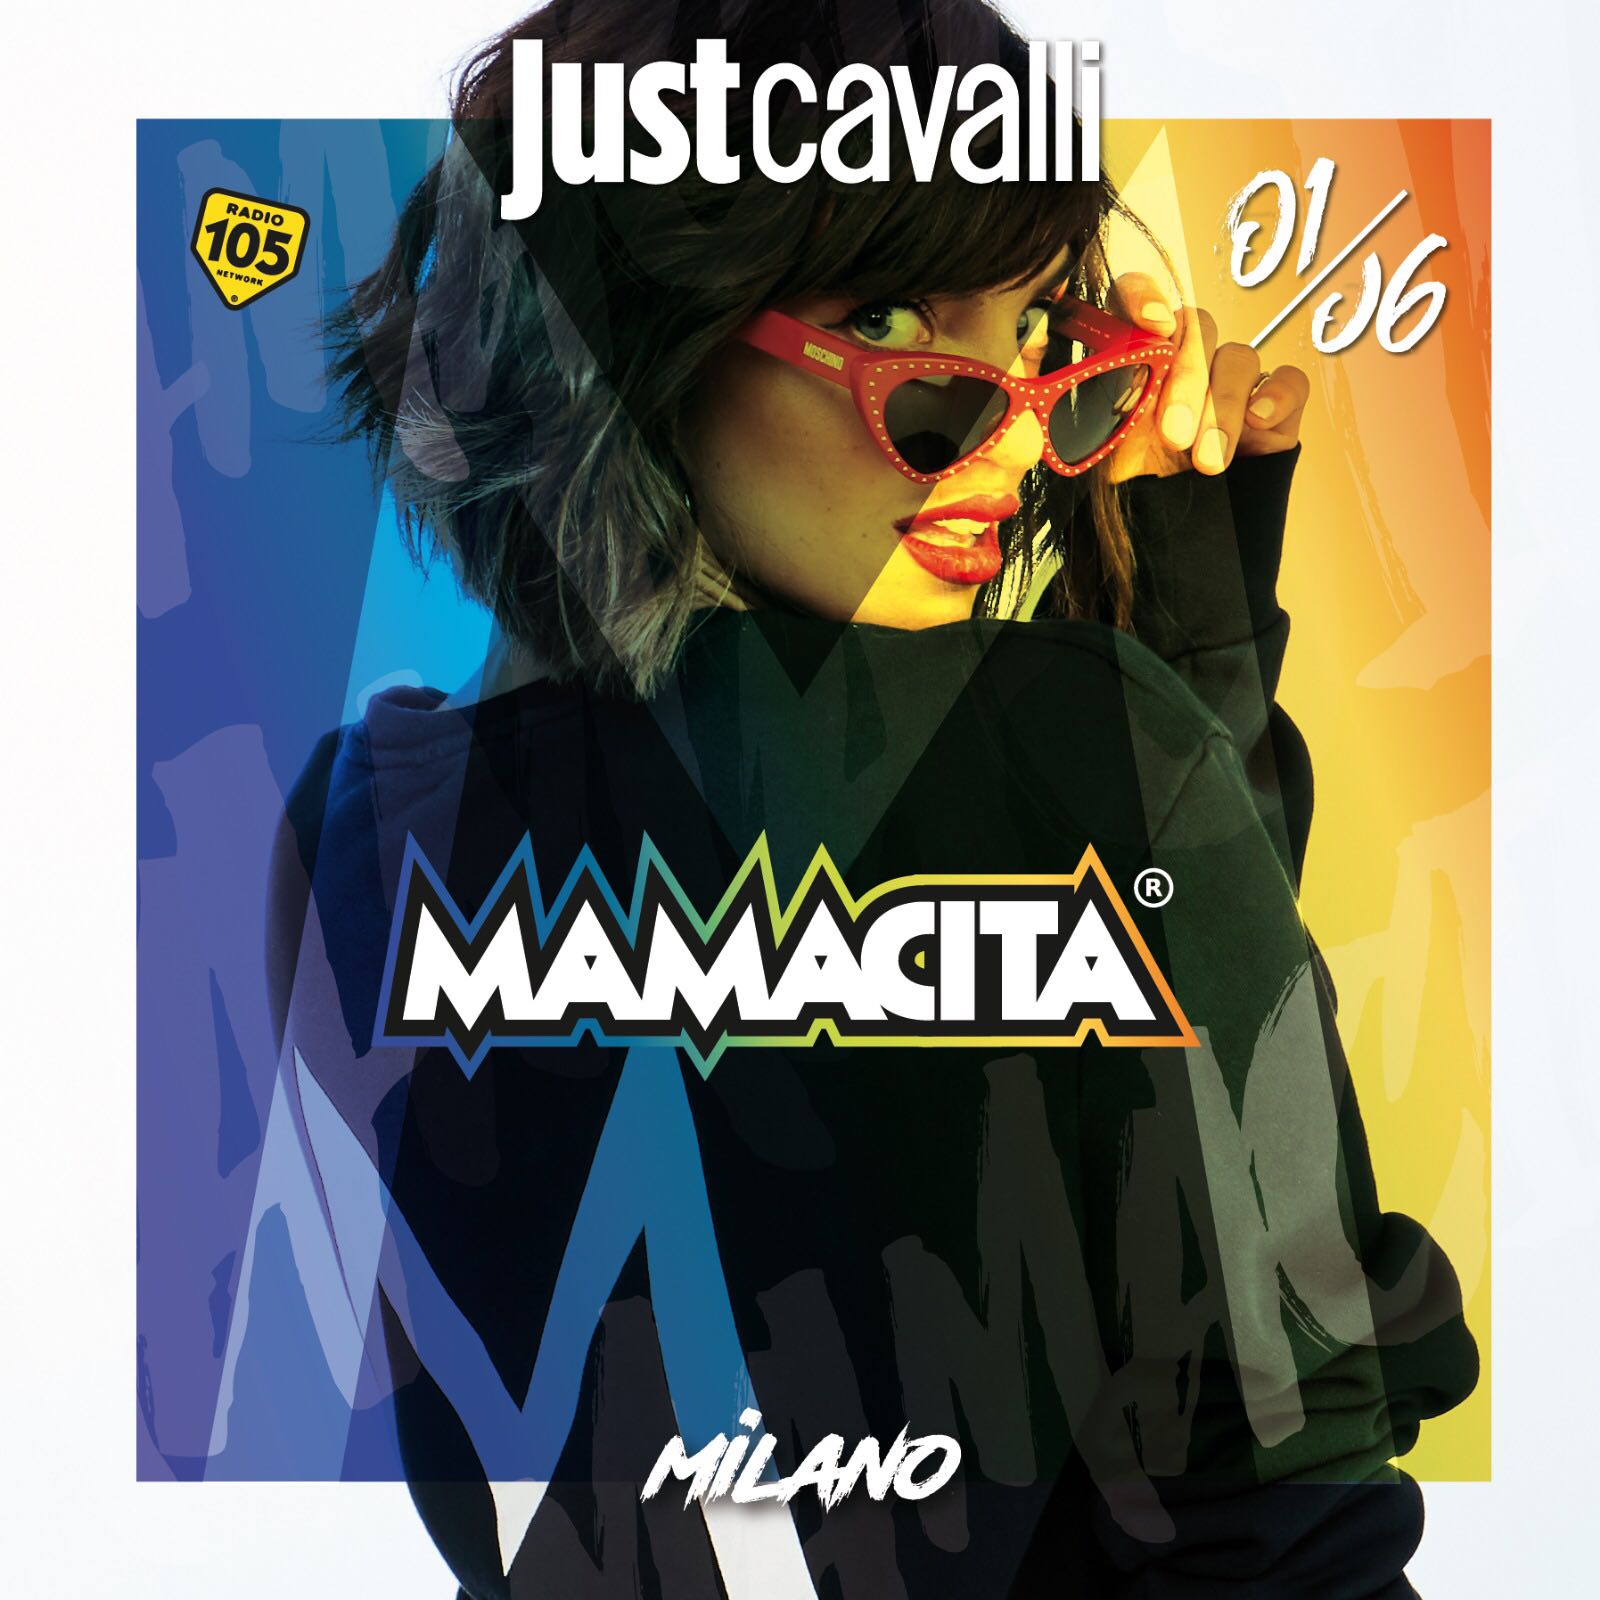 Foto: Venerdi Just Cavalli Milano Mamacita